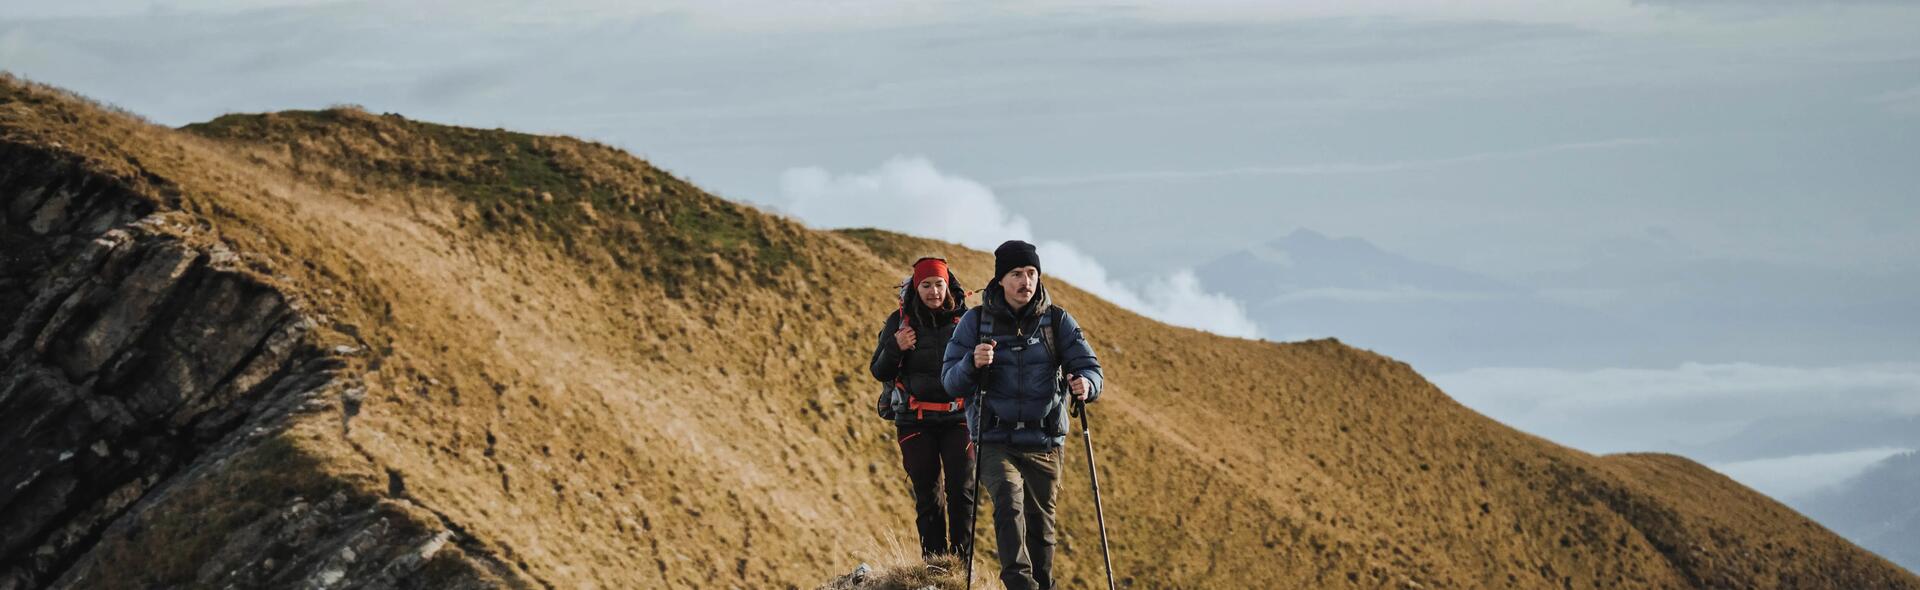 kobieta i mężczyzna wędrujący po górach w odzieży trekkingowej z kijami trekkingowymi w rękach